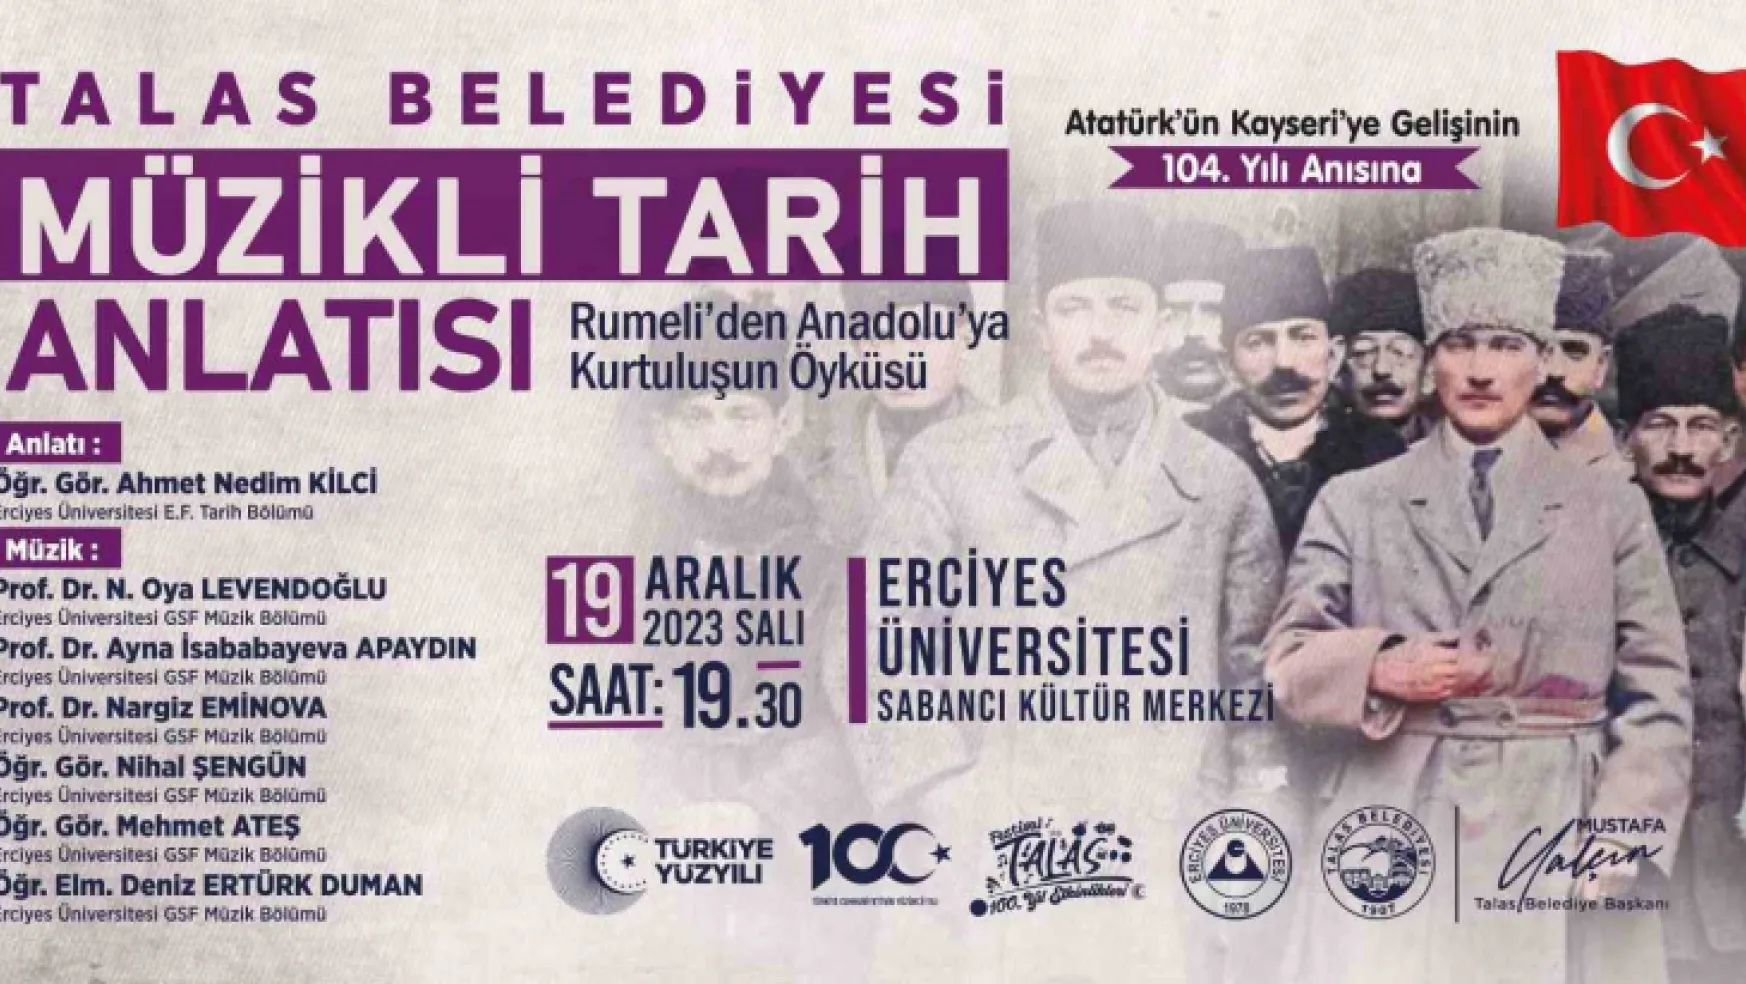 Talas'ta Atatürk'ün Kayseri'ye gelişi için özel program